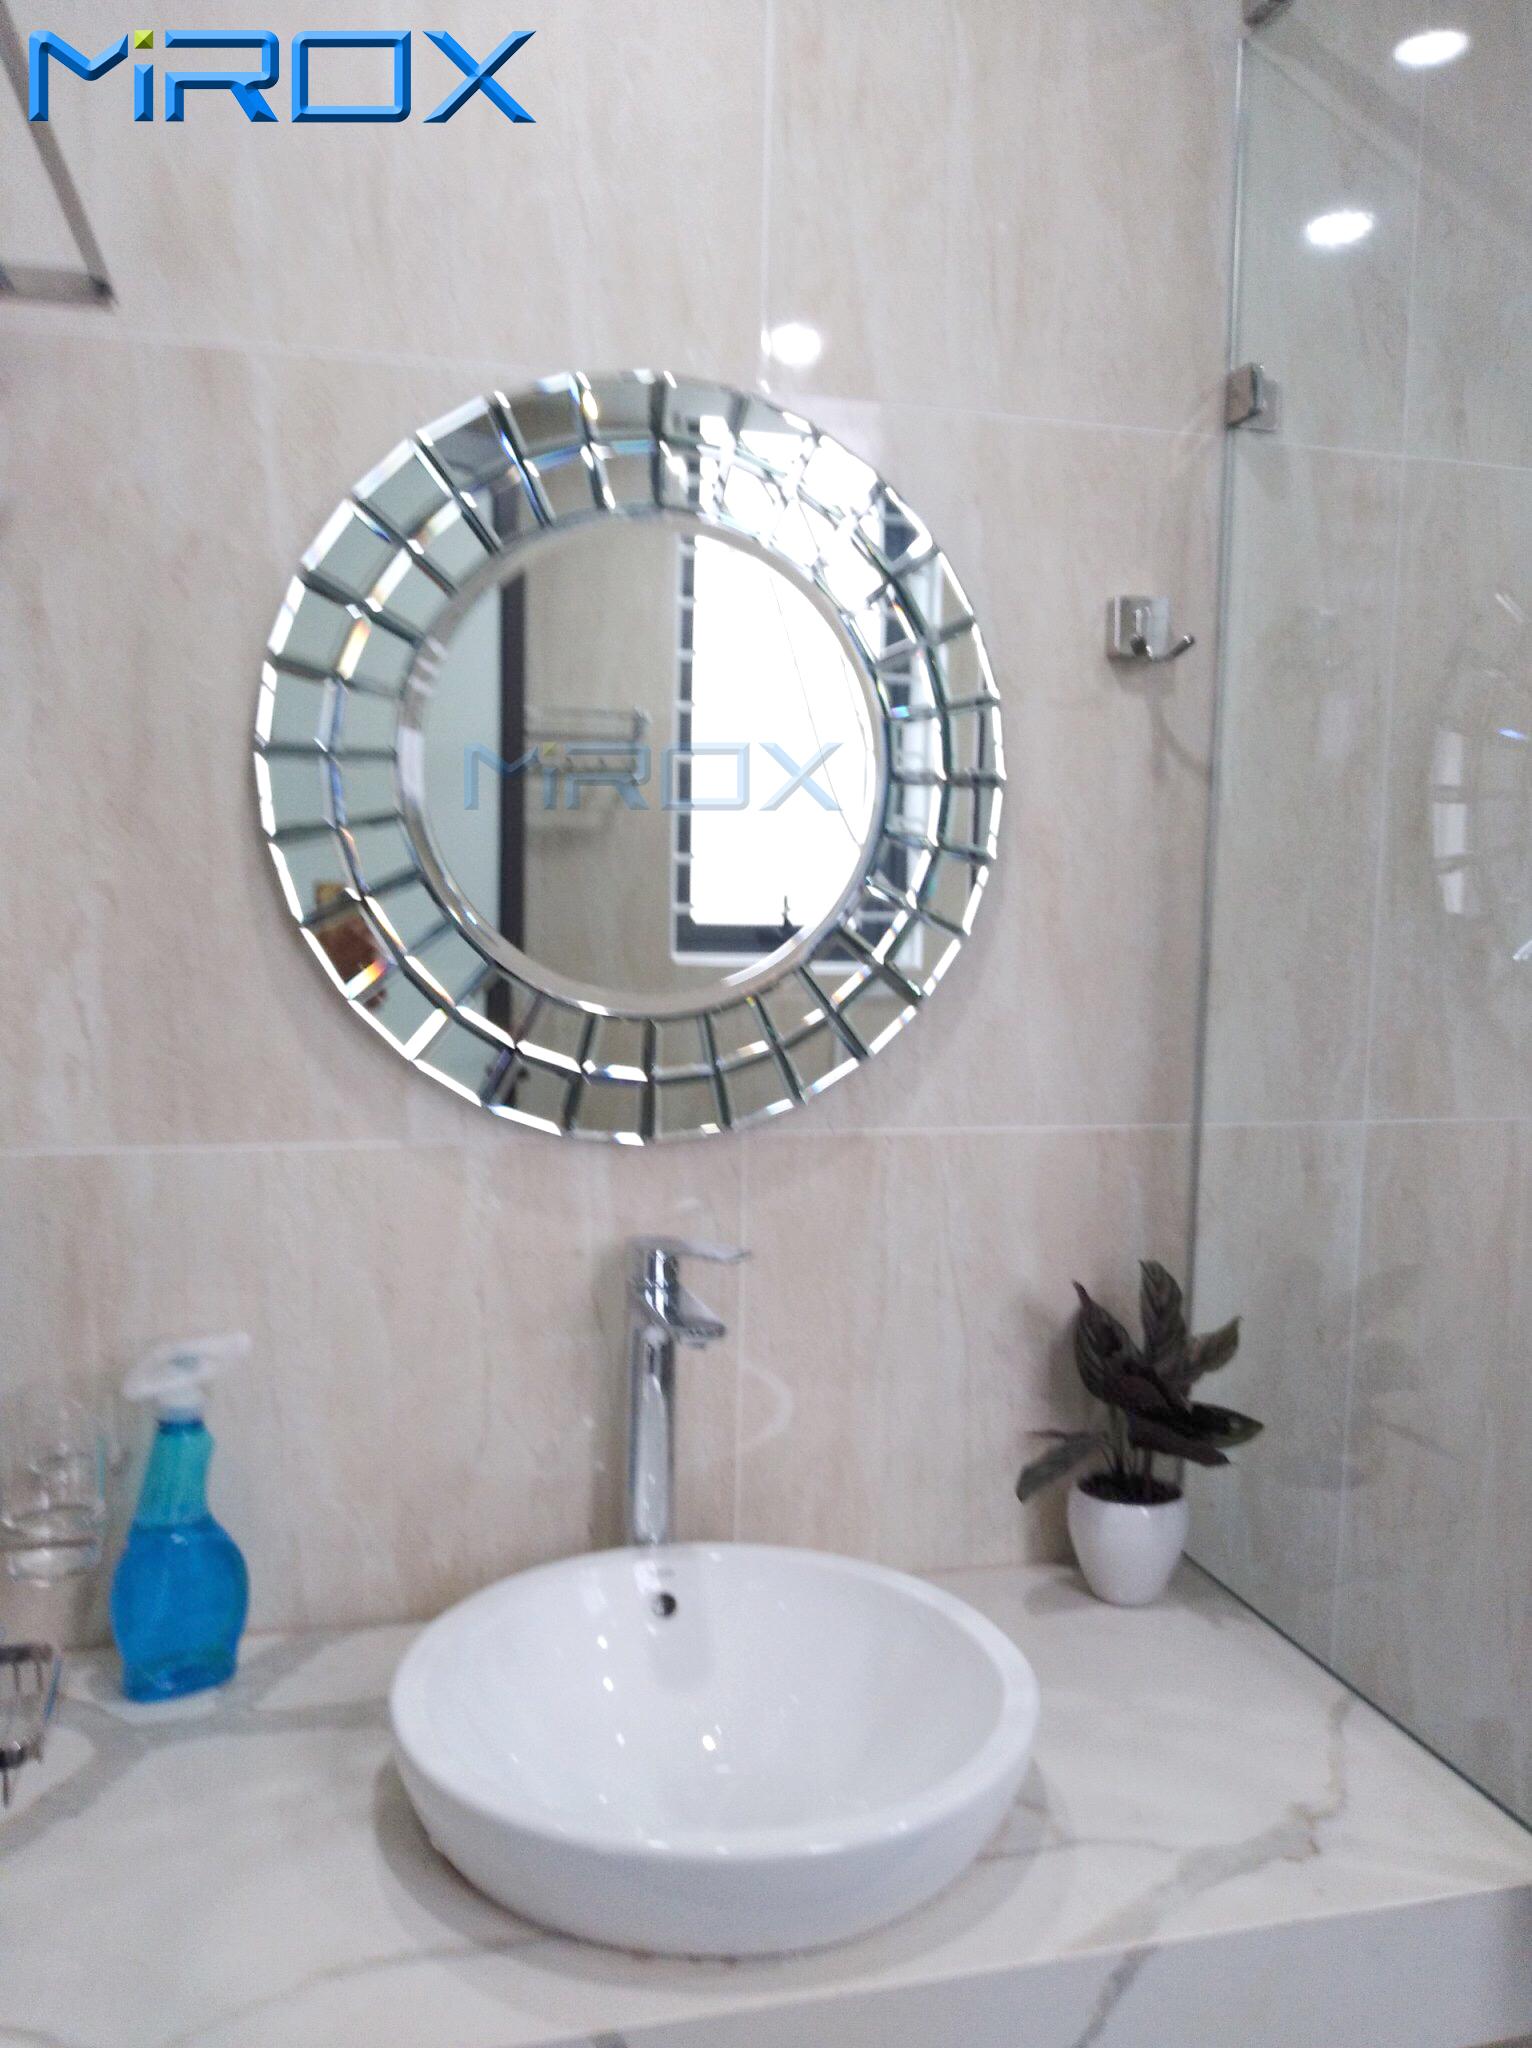 Gương phòng tắm cao cấp nghệ thuật: Sự tinh tế và độc đáo được thể hiện rõ ràng trong chiếc gương phòng tắm nghệ thuật cao cấp này. Với những họa tiết được chạm khắc tinh xảo trên bề mặt gương, sản phẩm này không chỉ là một nguồn cảm hứng mà còn là một tác phẩm nghệ thuật đẹp mắt trong không gian phòng tắm của bạn.